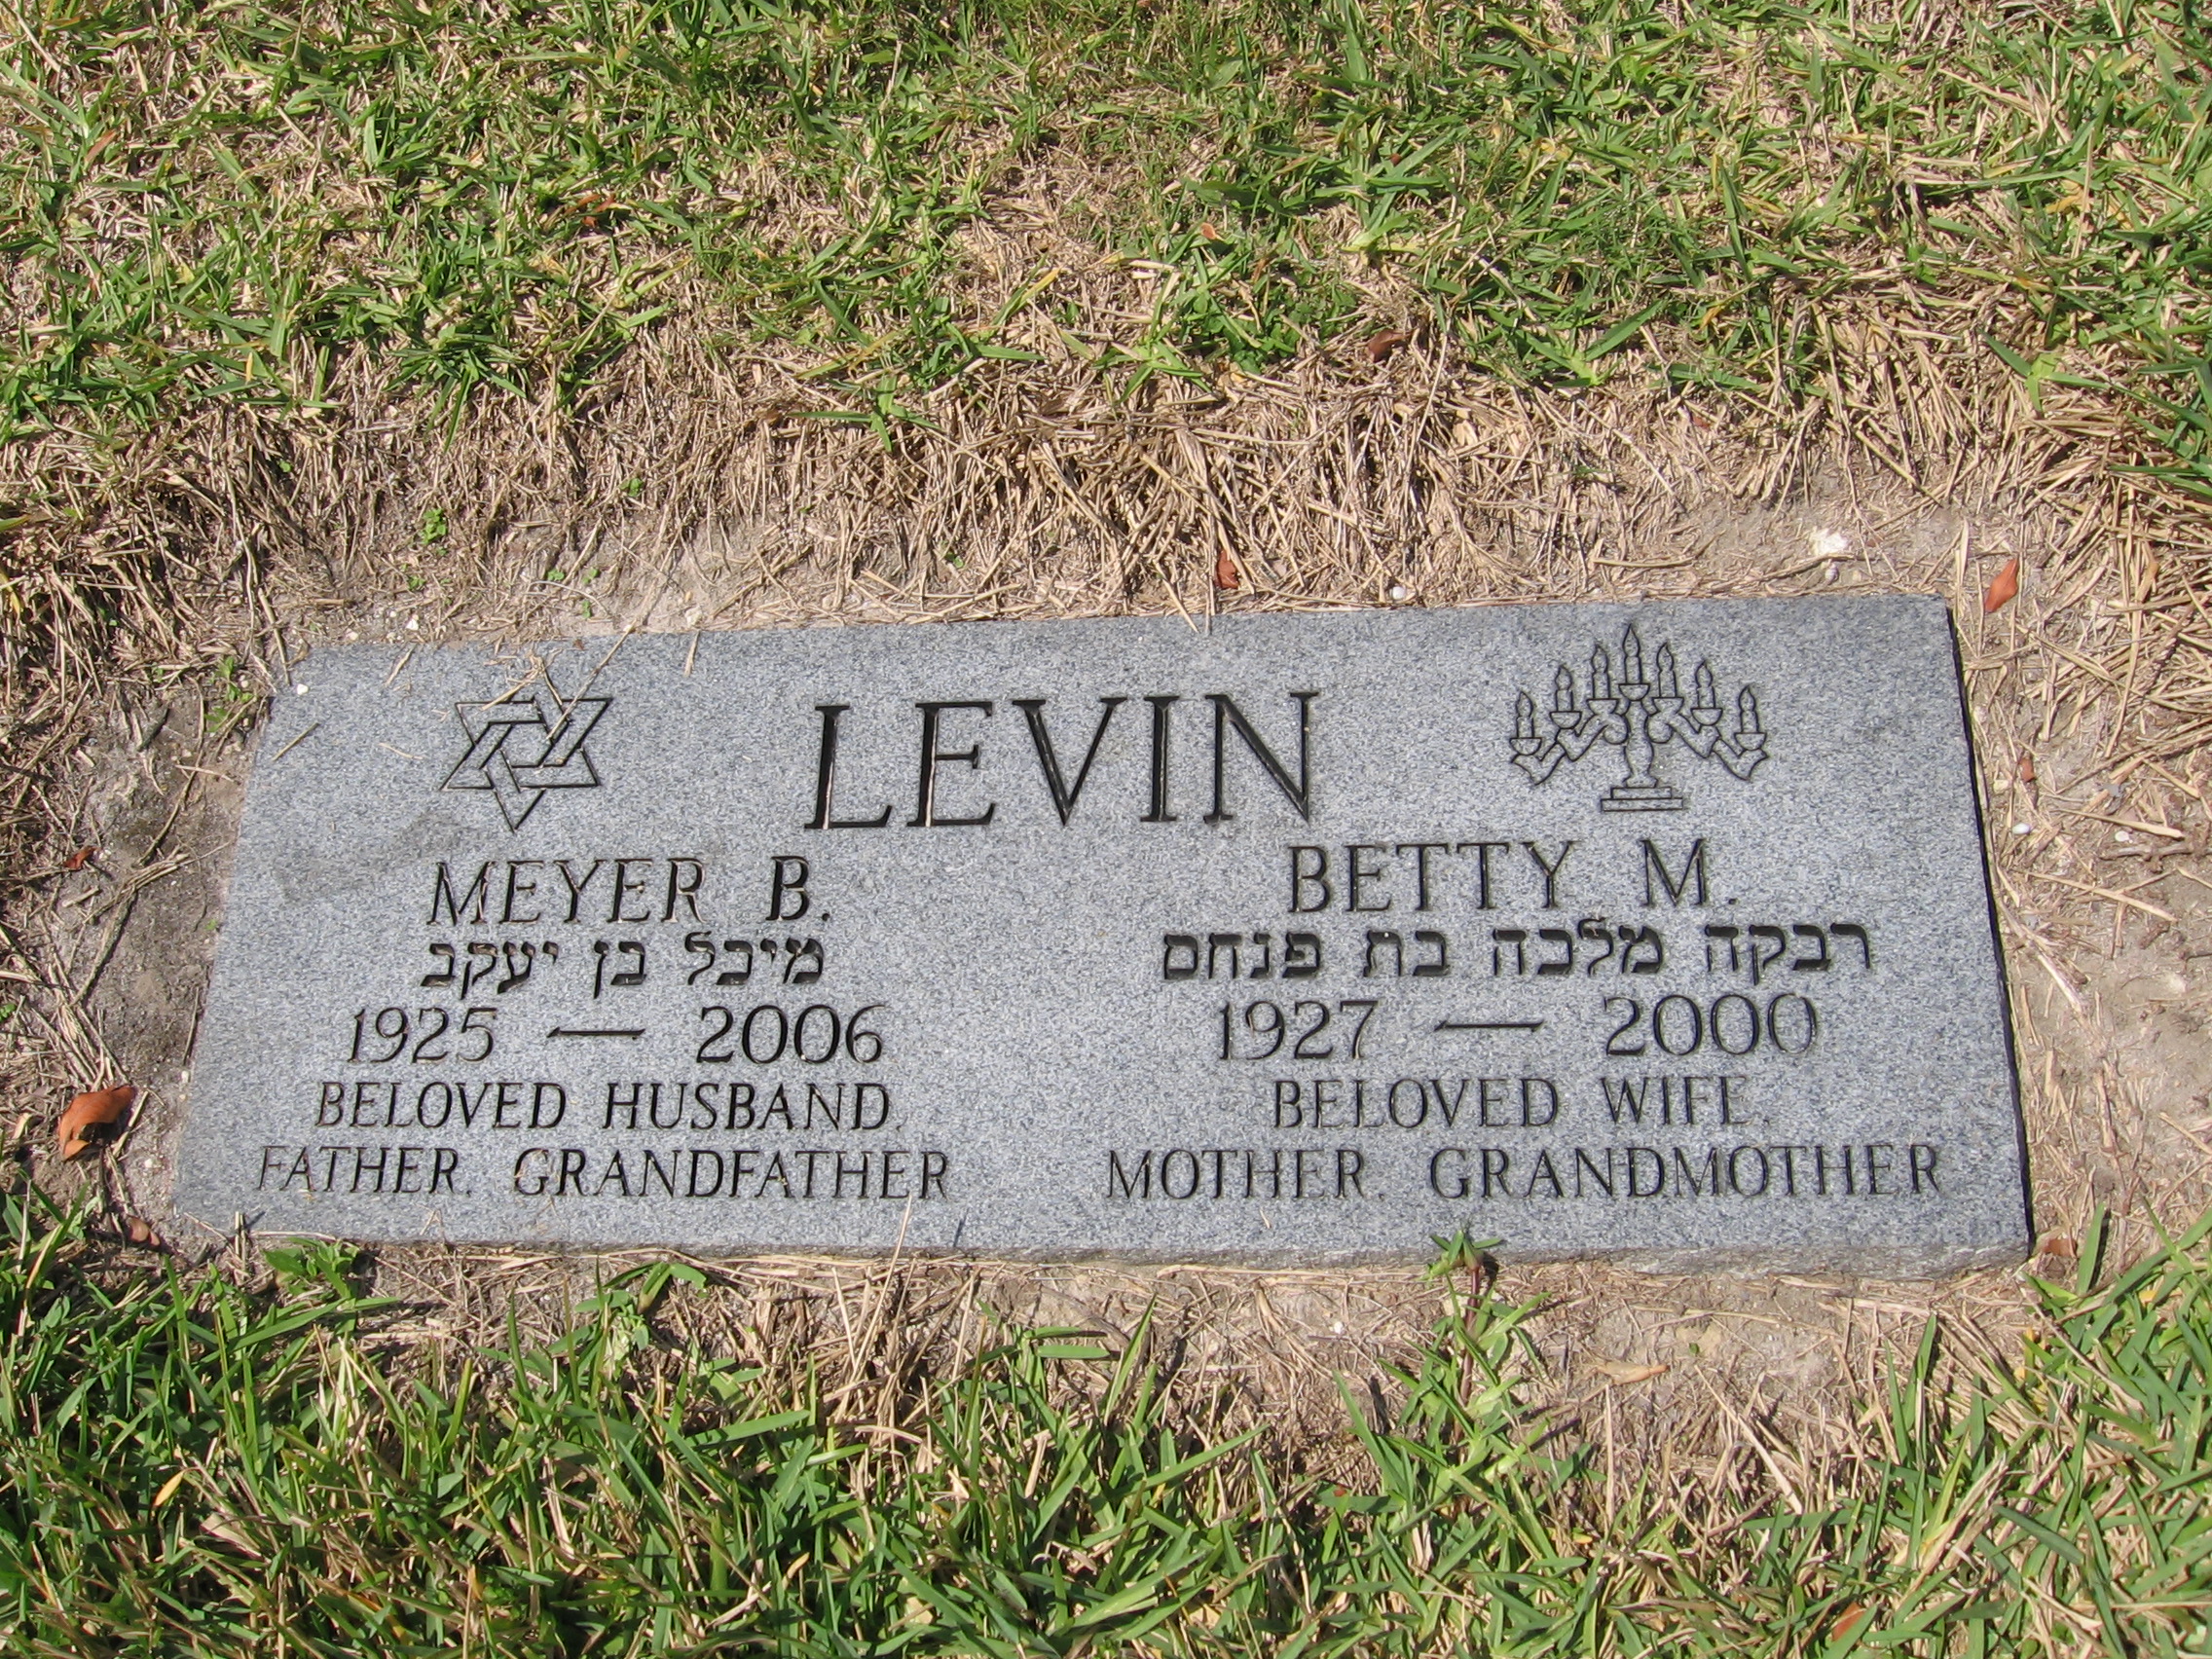 Meyer B Levin